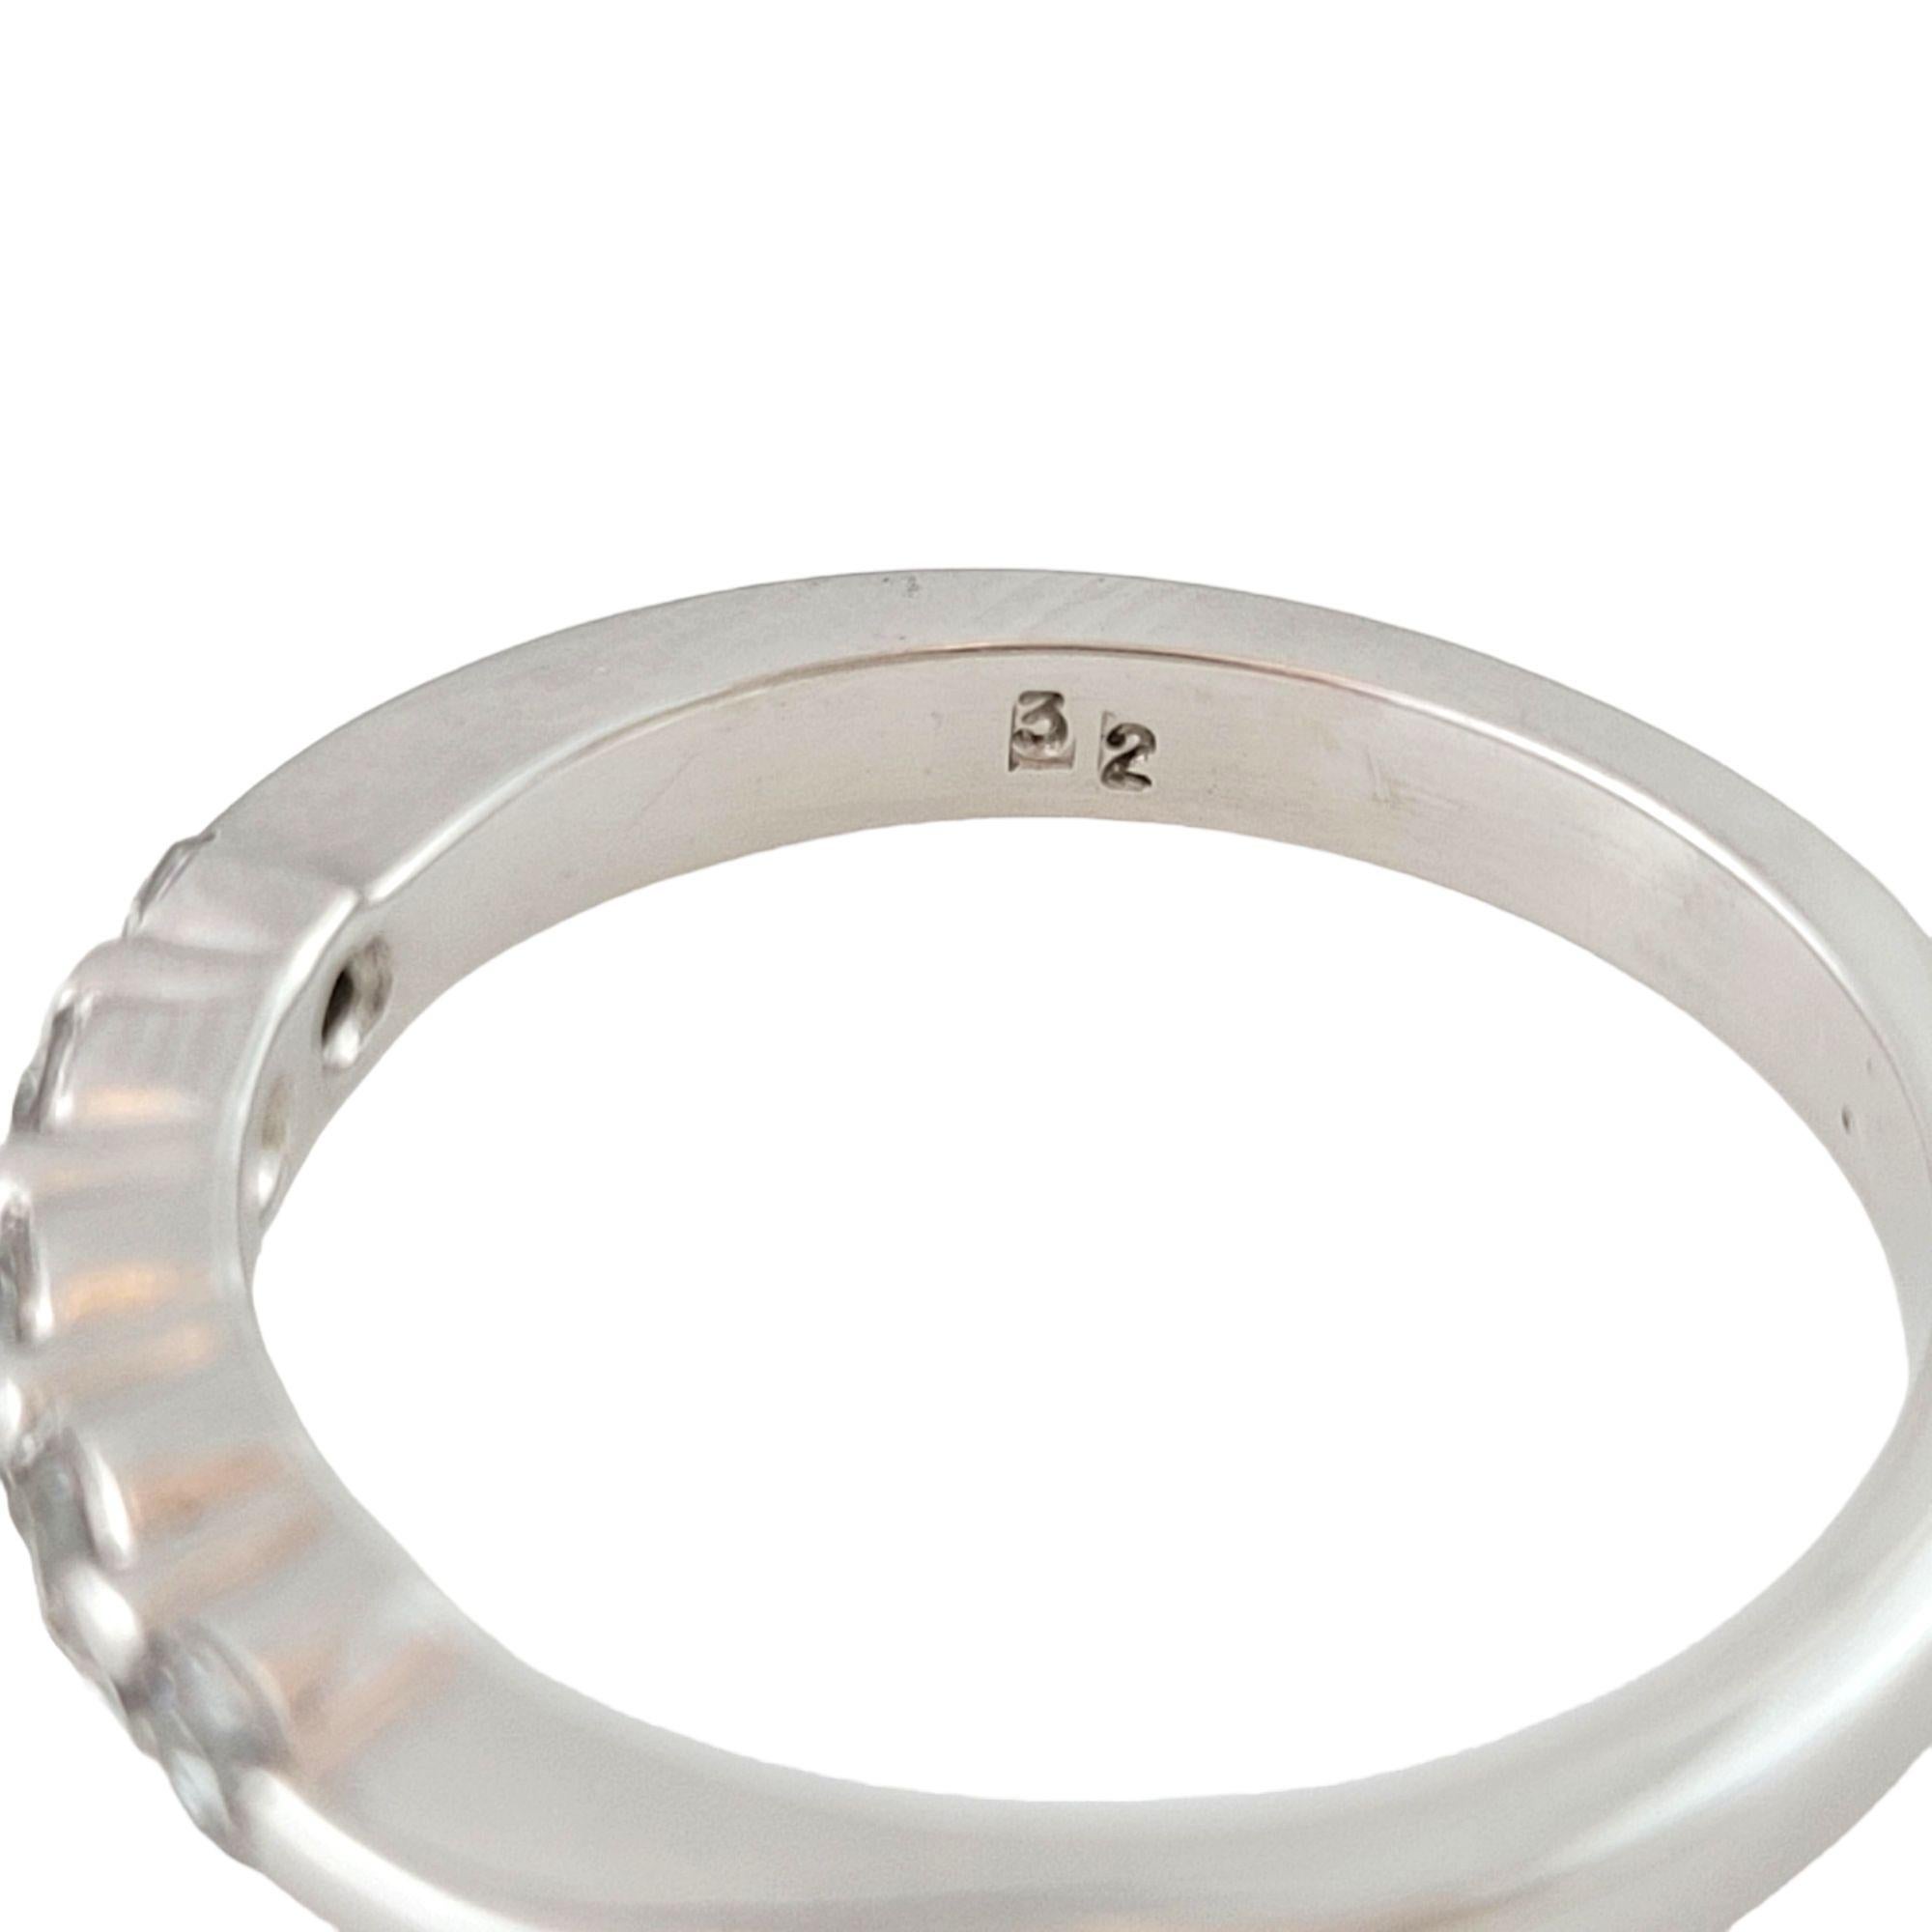 Vintage 14 Karat White Gold Diamond Wedding Band Ring Taille 6.5-

Ce bracelet étincelant présente cinq diamants ronds de taille brillant sertis dans de l'or blanc classique 14K. Largeur : 3 mm.

Poids total approximatif des diamants : 0,25